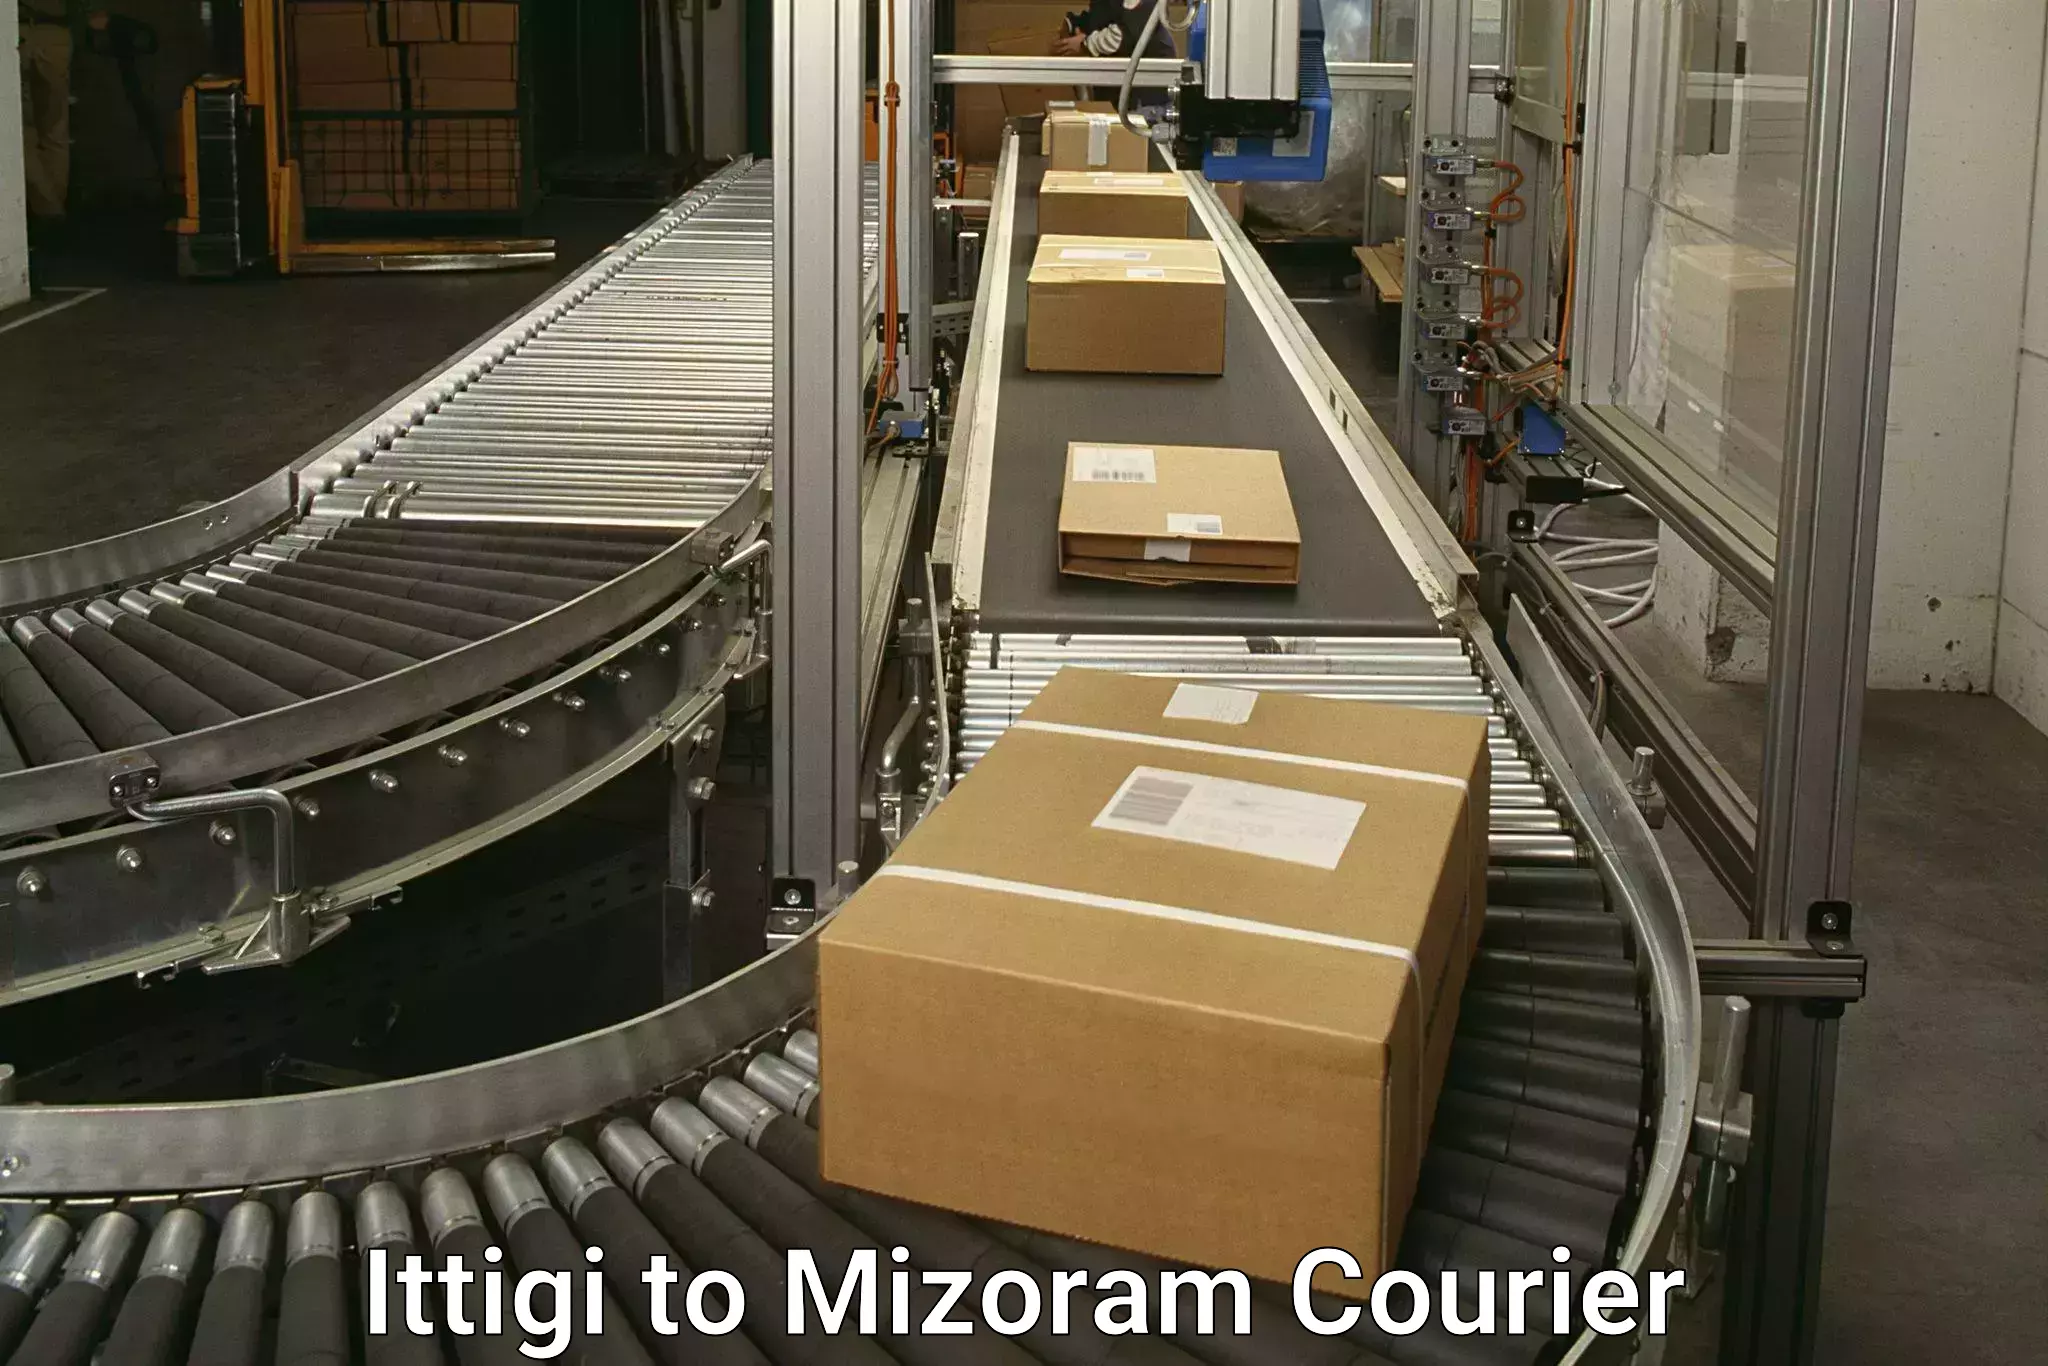 Pharmaceutical courier Ittigi to Mizoram